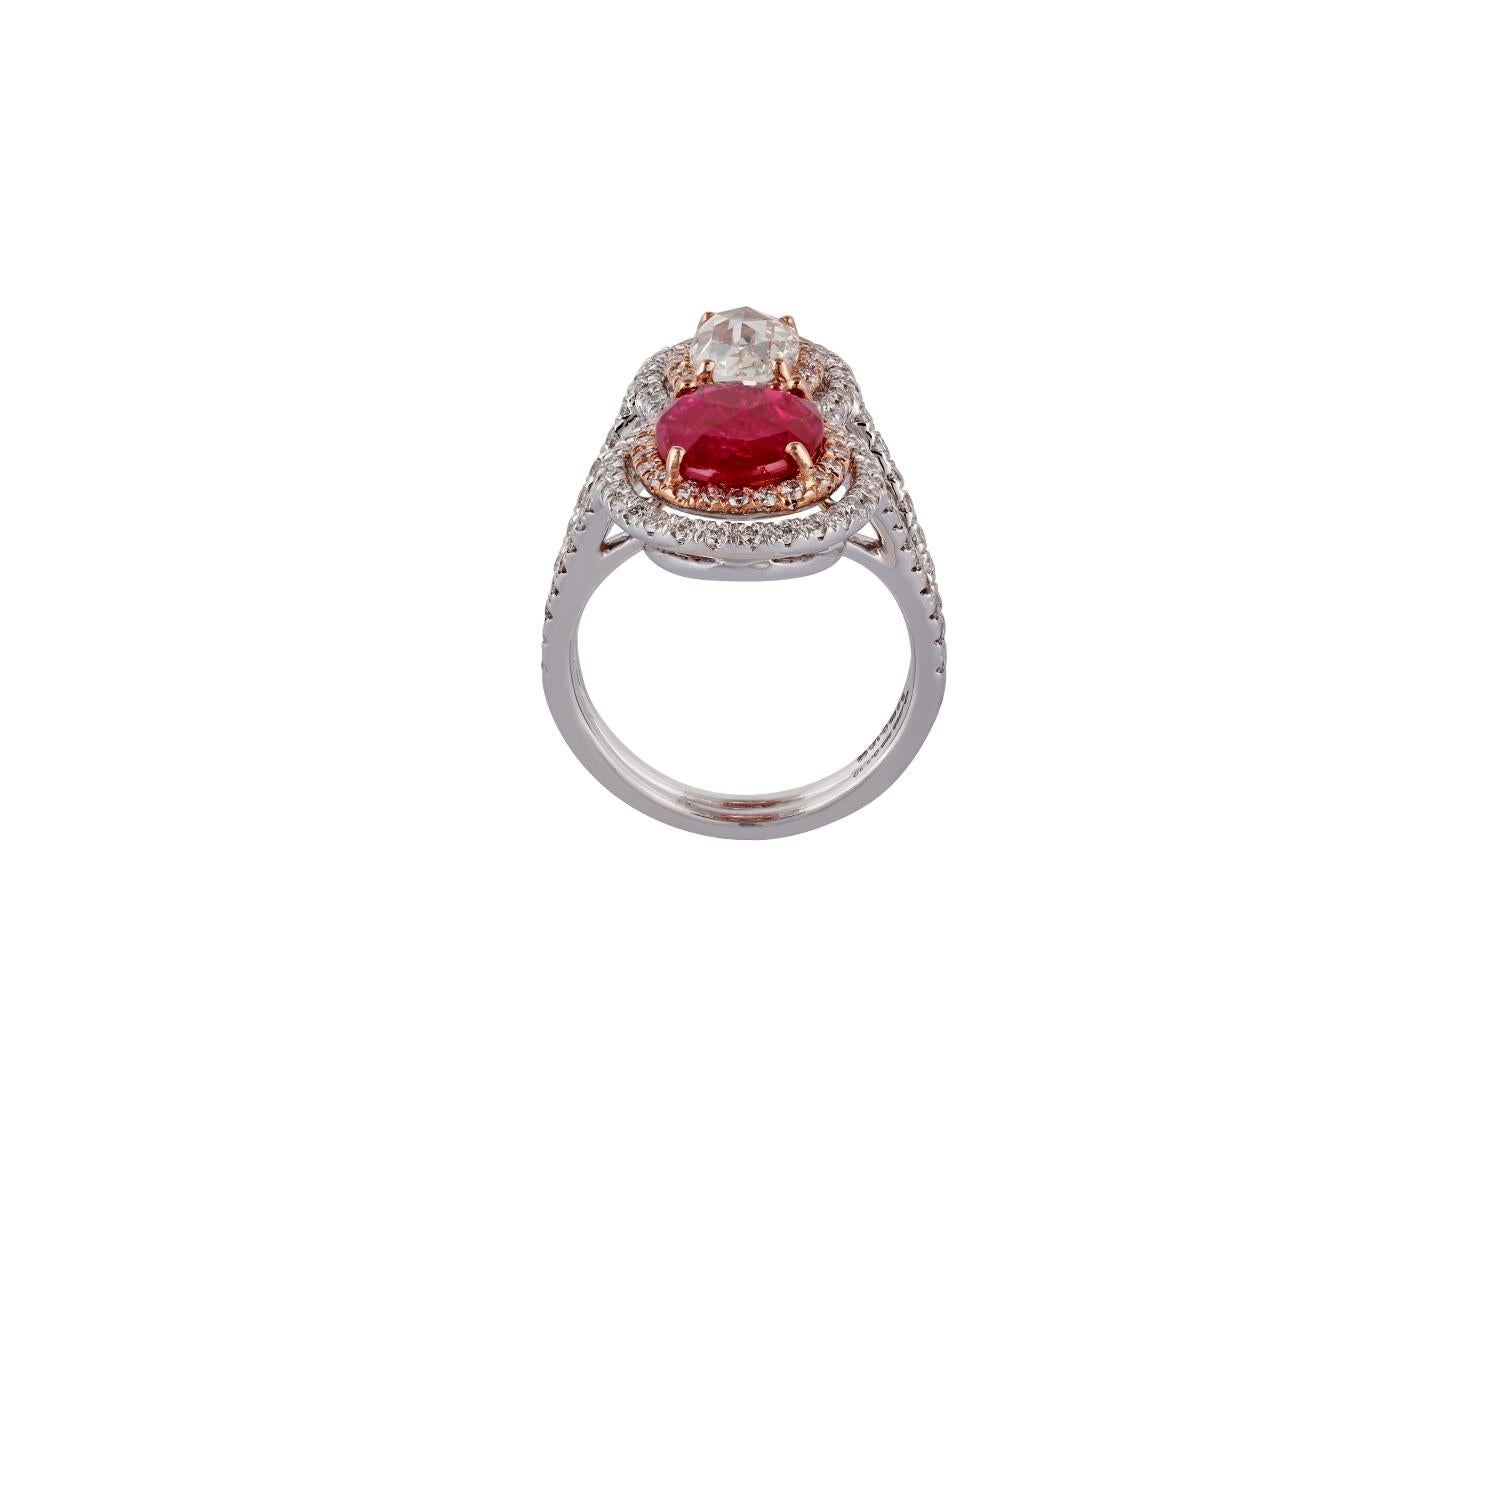 Il s'agit d'une bague exclusive à rubis et diamants comprenant un rubis du Mozambique de forme ovale taillé en rose de 2,09 carats, un diamant de forme ovale taillé en rose de 0,98 carat et 109 diamants ronds taillés en brillant de 1,12 carat. La